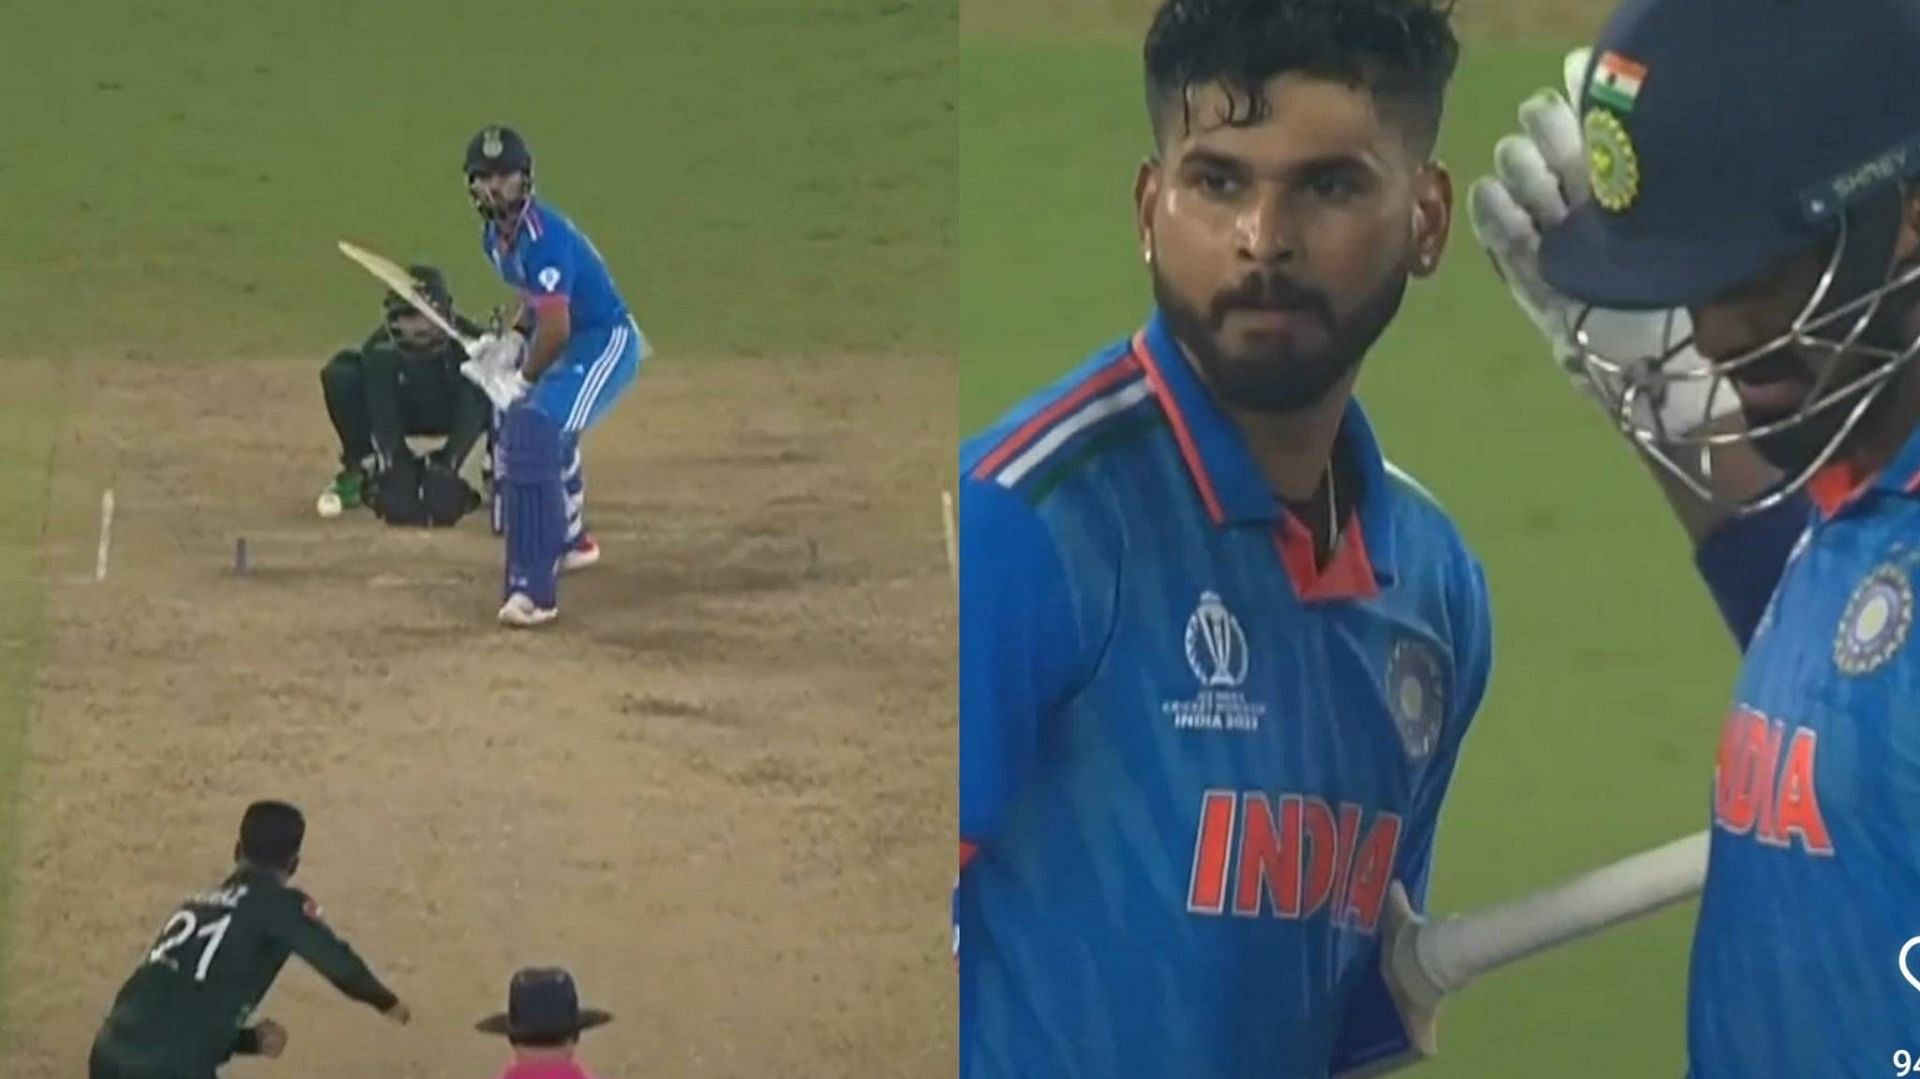 Shreyas Iyer smashed the winning shot for India (Image: ICC/Instagram)